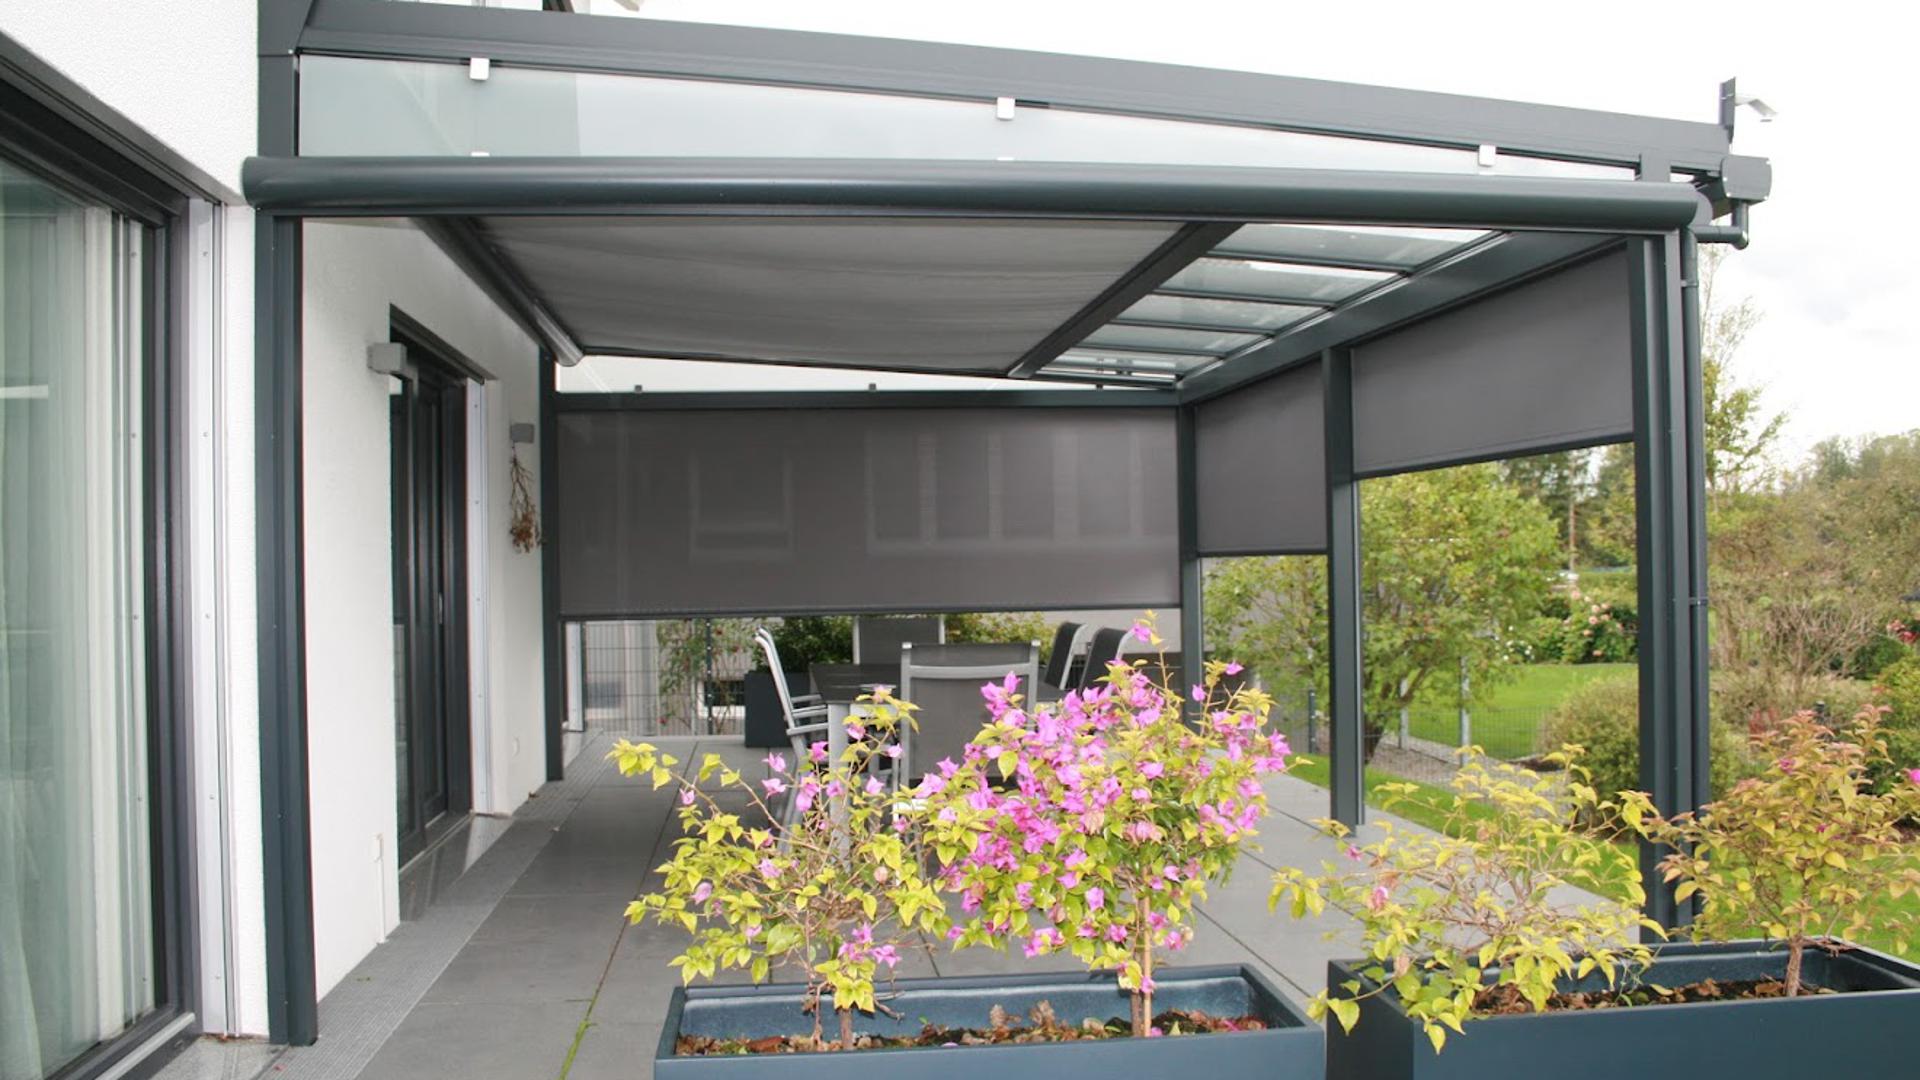 MC Building bietet passend zu den Dächern einen Sonnen-, Sicht- und Windschutz. 